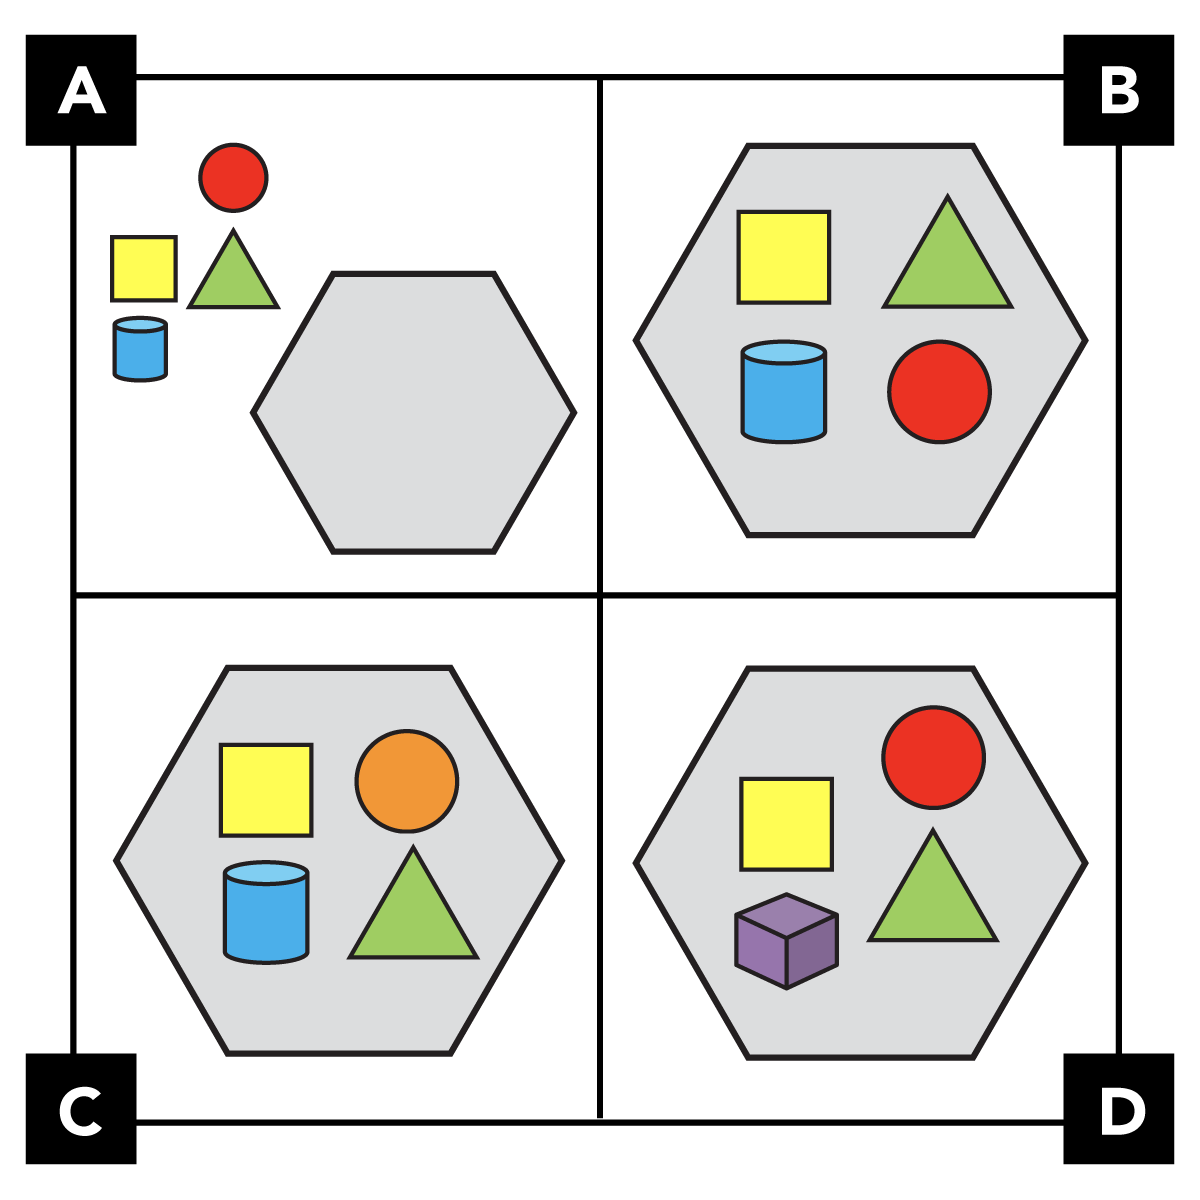 Un cuadrado dividido en 4 cuadrantes; cada cuadrante tiene un conjunto diferente de figuras geométricas.